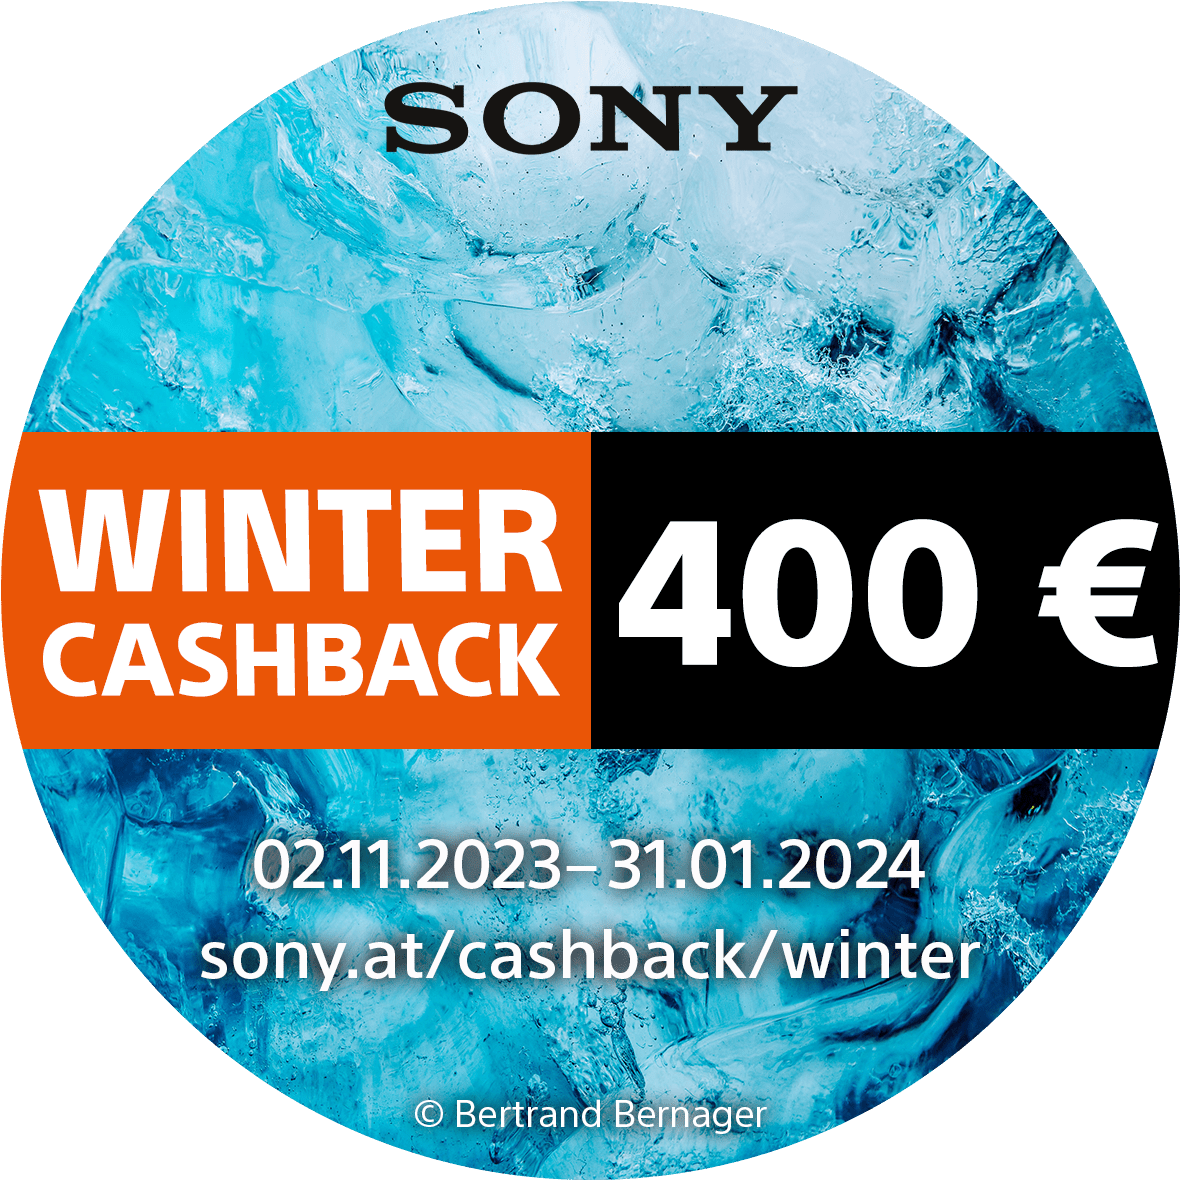 Sony_Winter_Cashback_02112023_bis_31012024_400